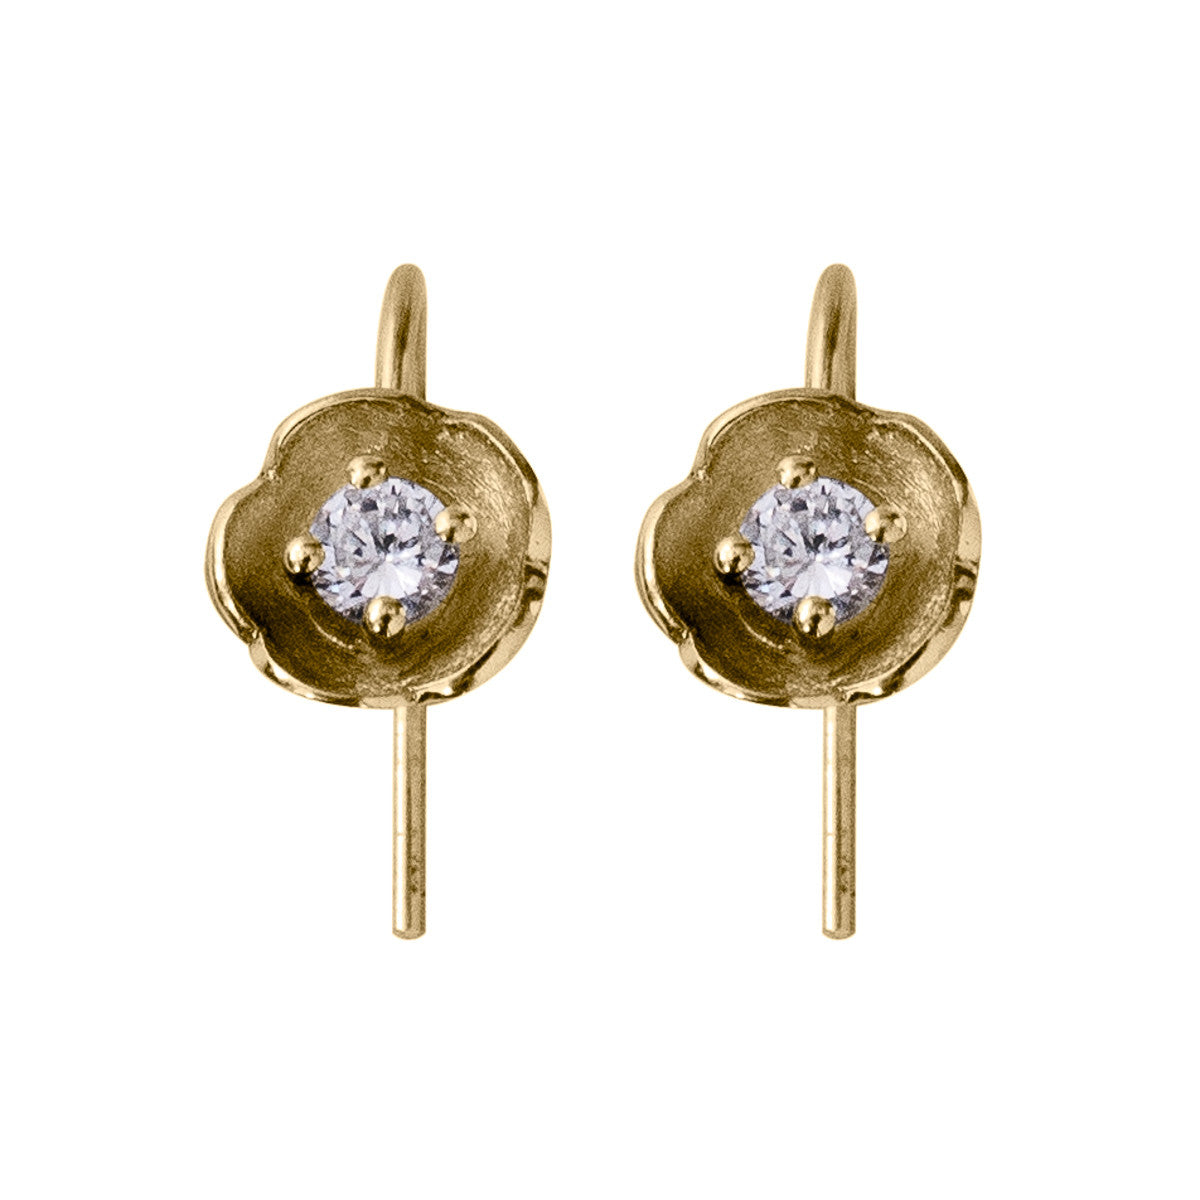 five petal gold flower earrings set with diamond on ear hook